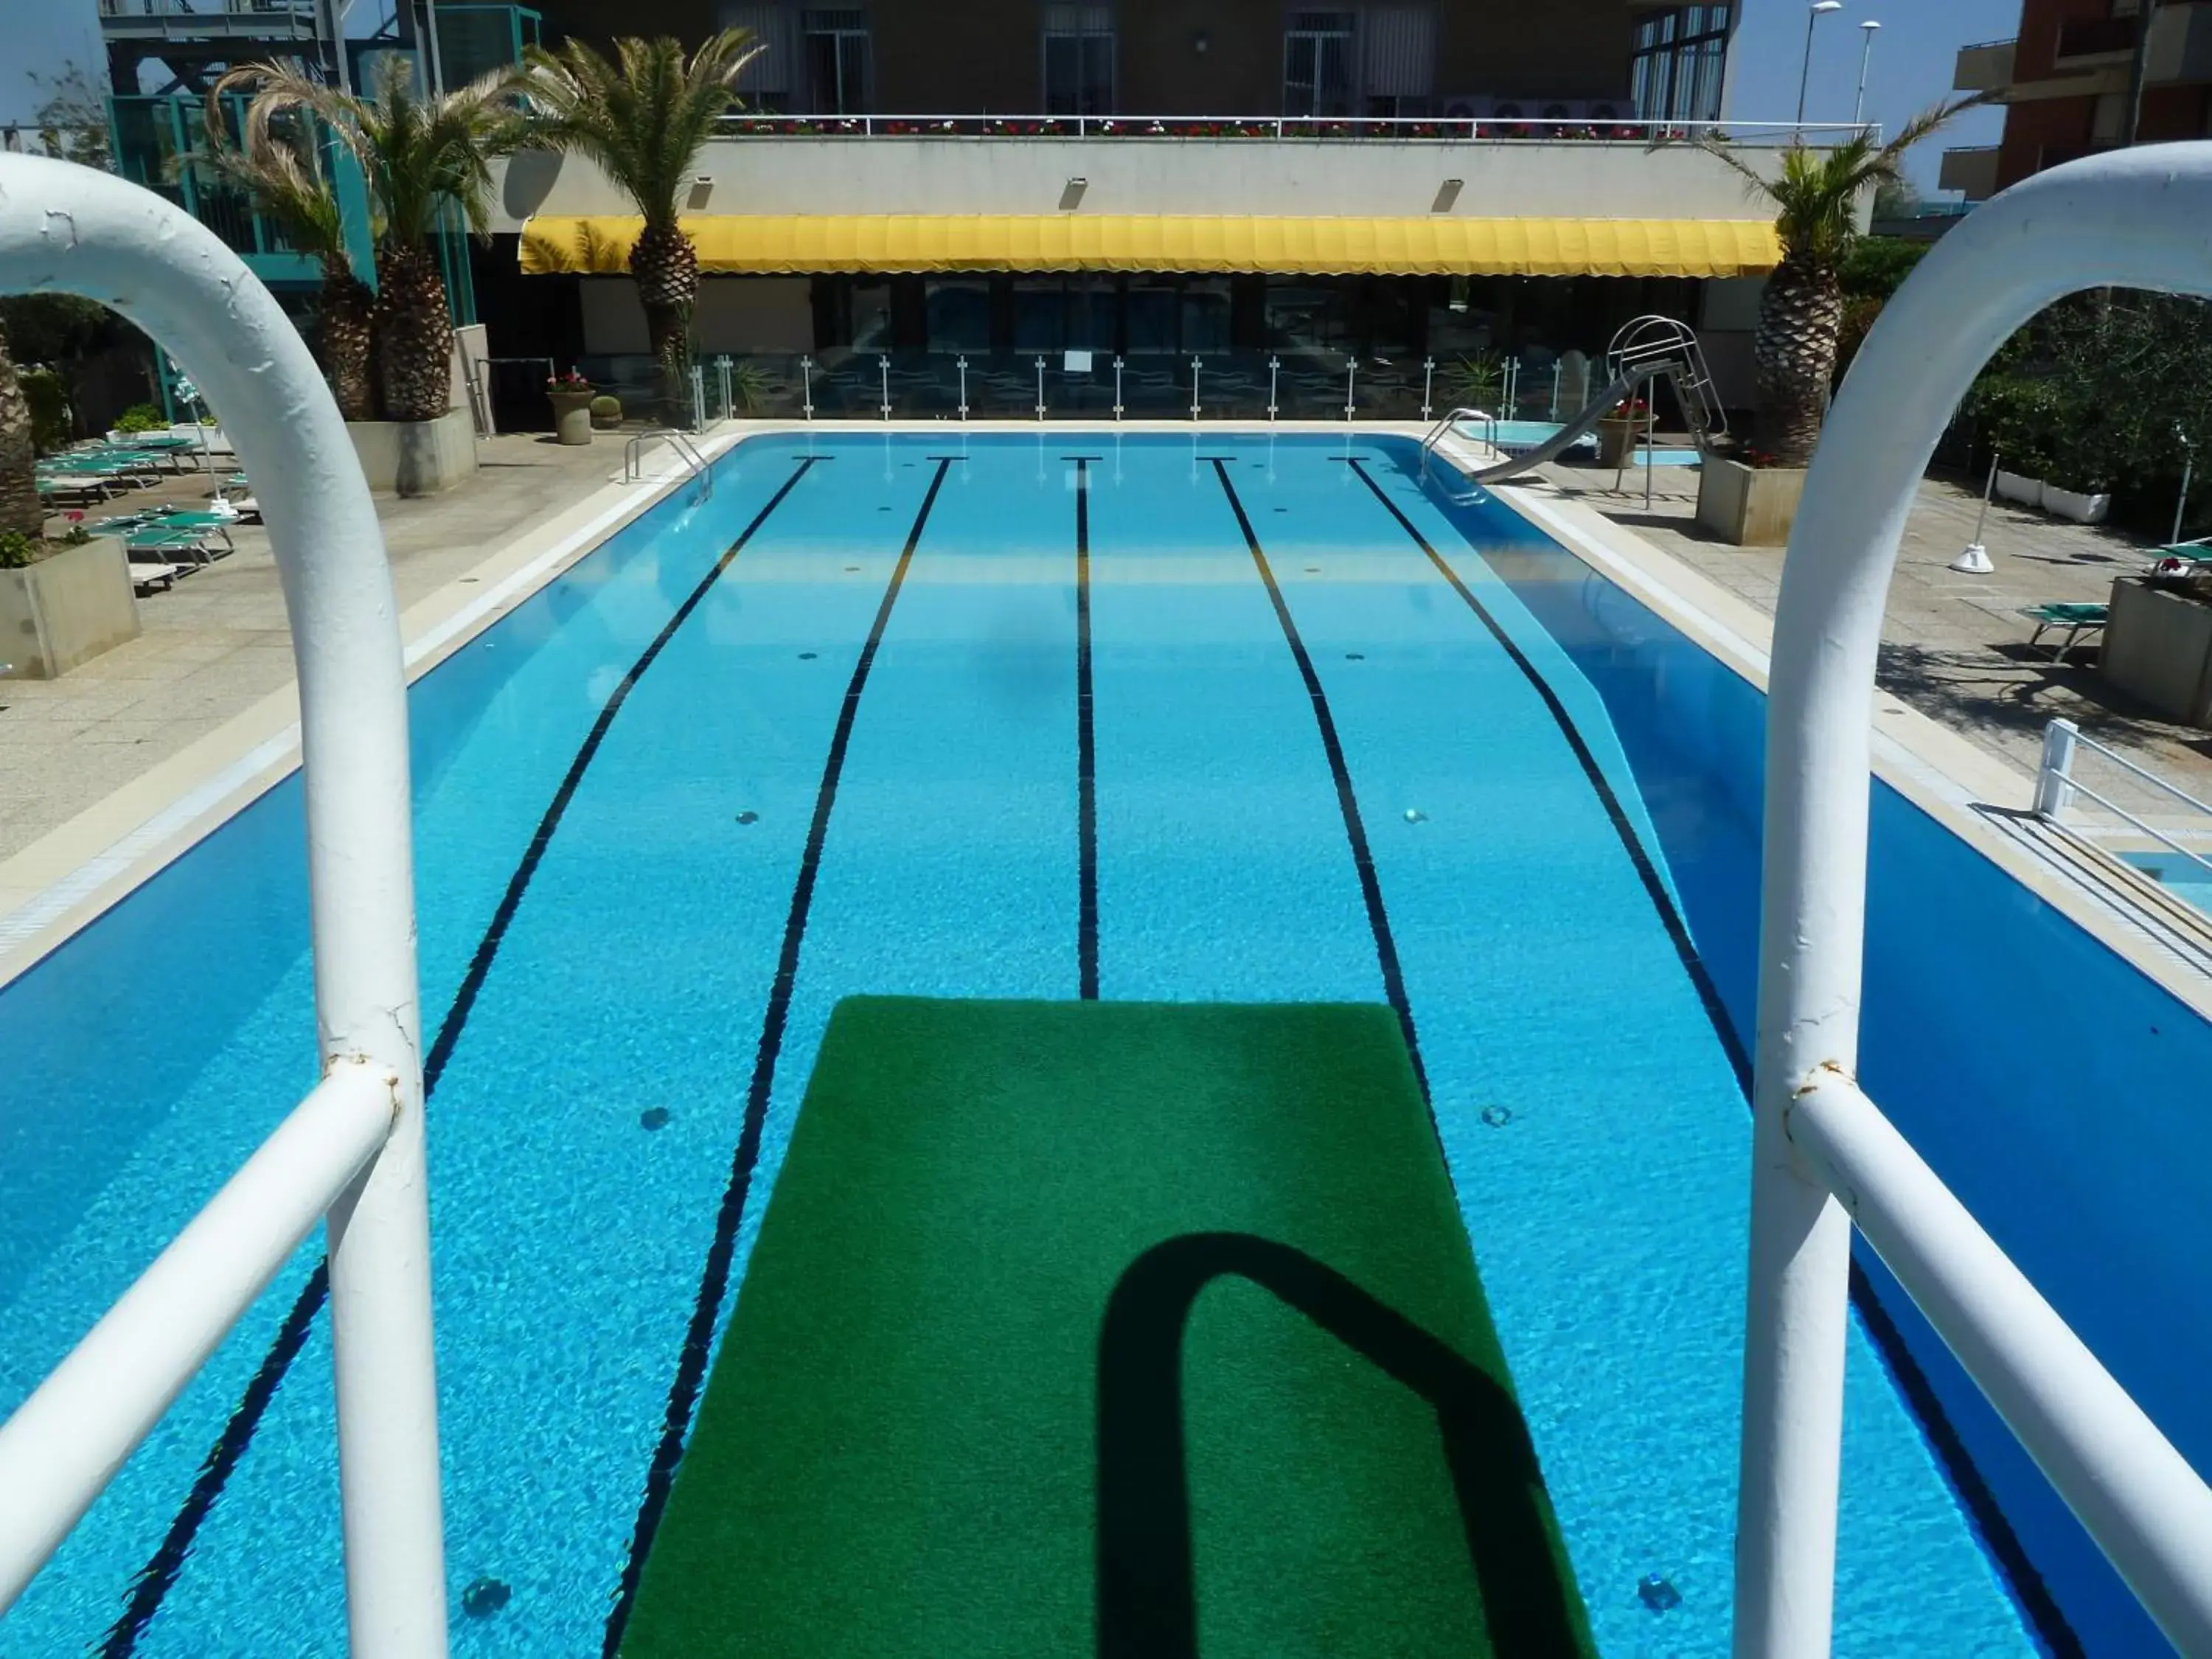 Day, Swimming Pool in Hotel Cormoran